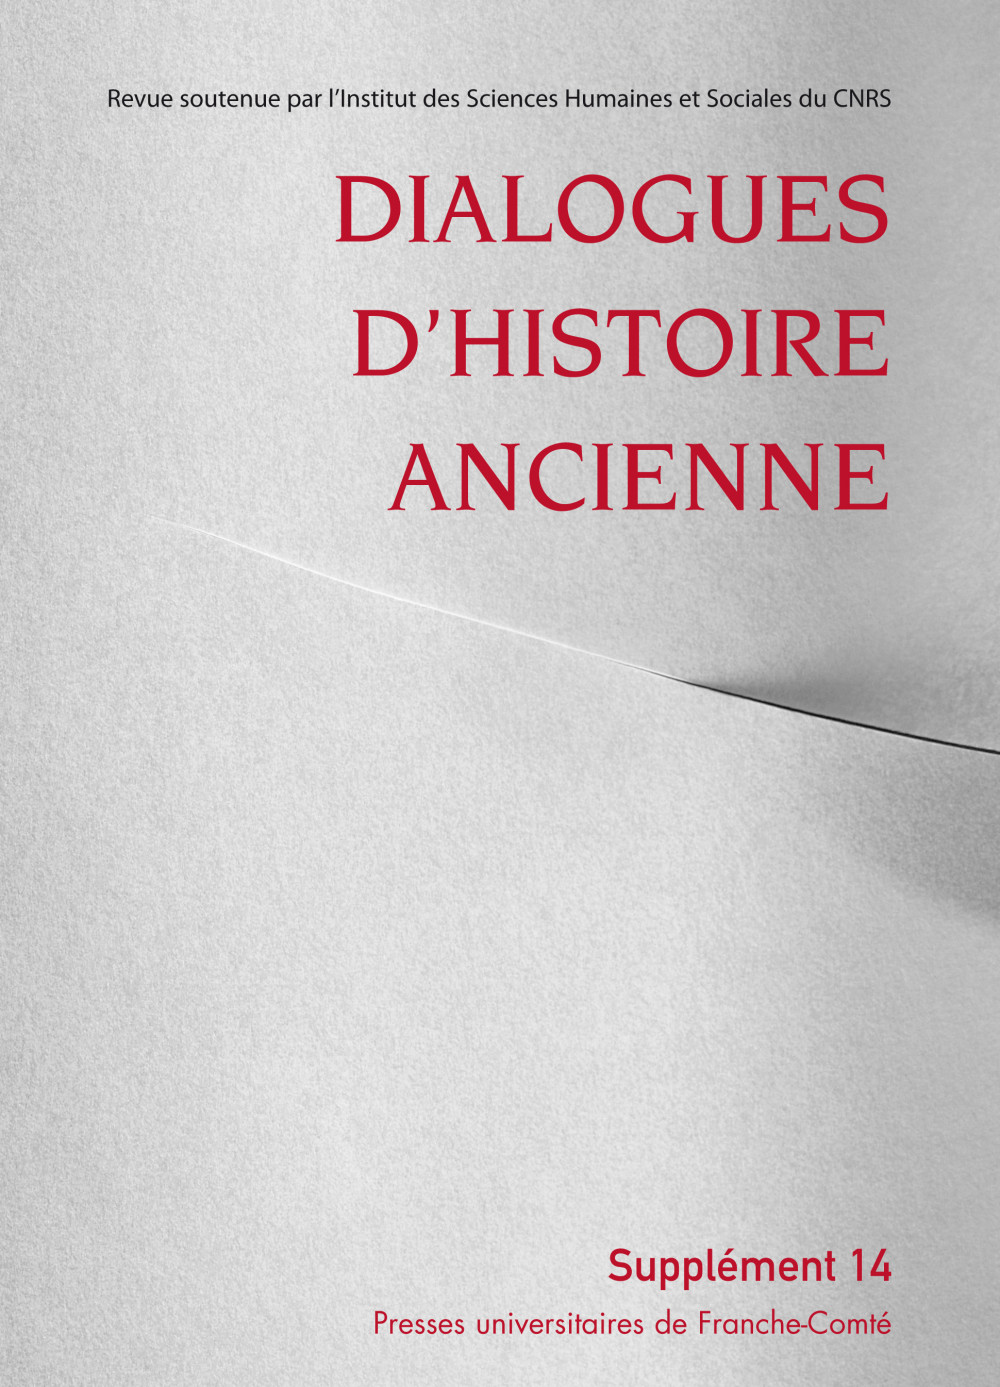 Dialogues d’Histoire Ancienne supplément 14